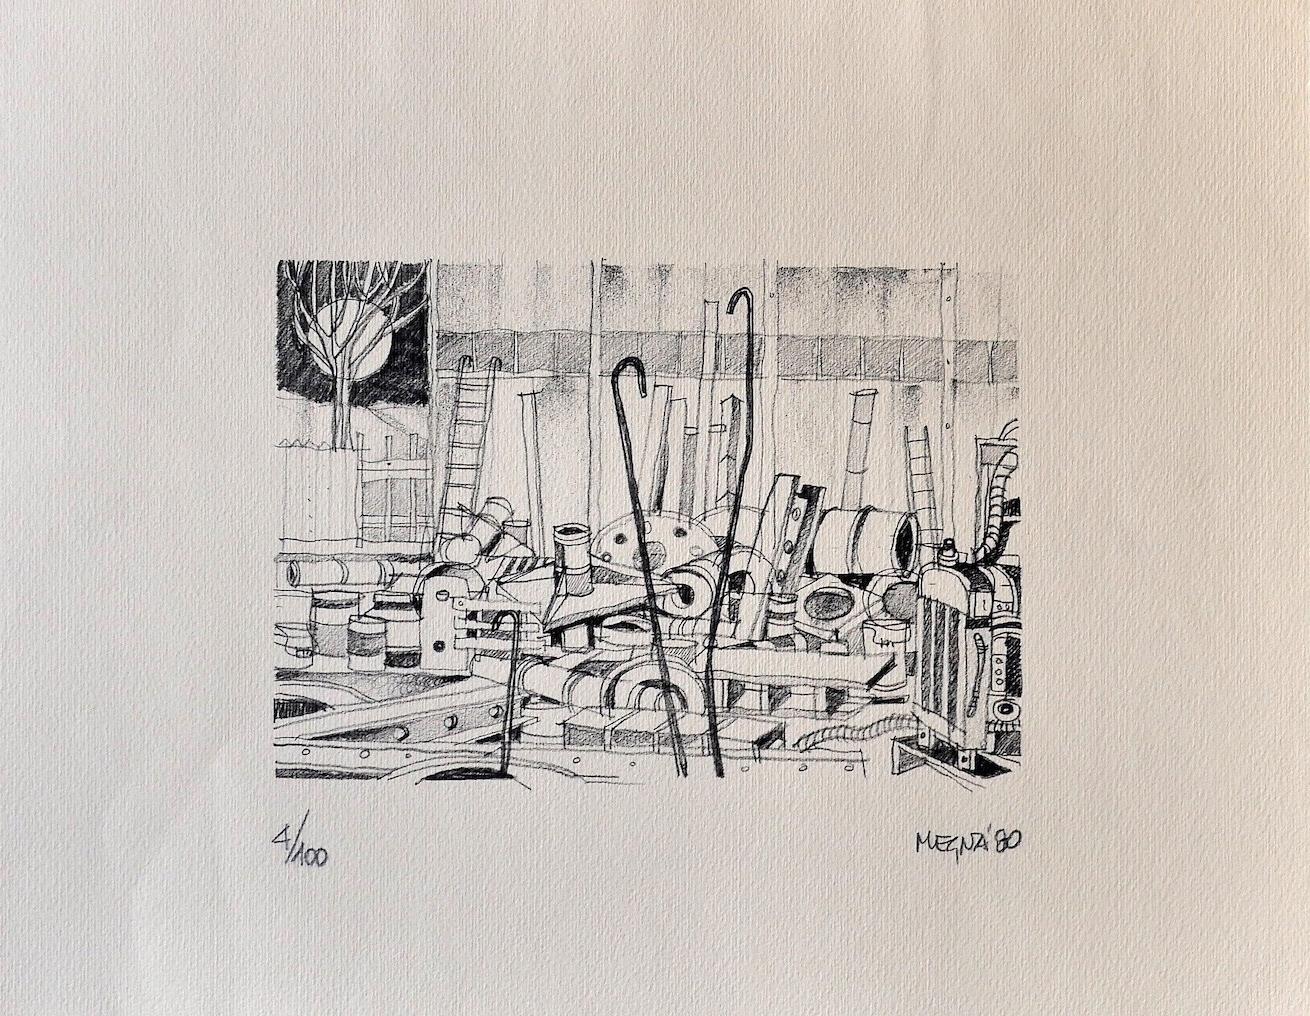 Workshop - Original Lithograph by Giuseppe Megna - 1980 ca.